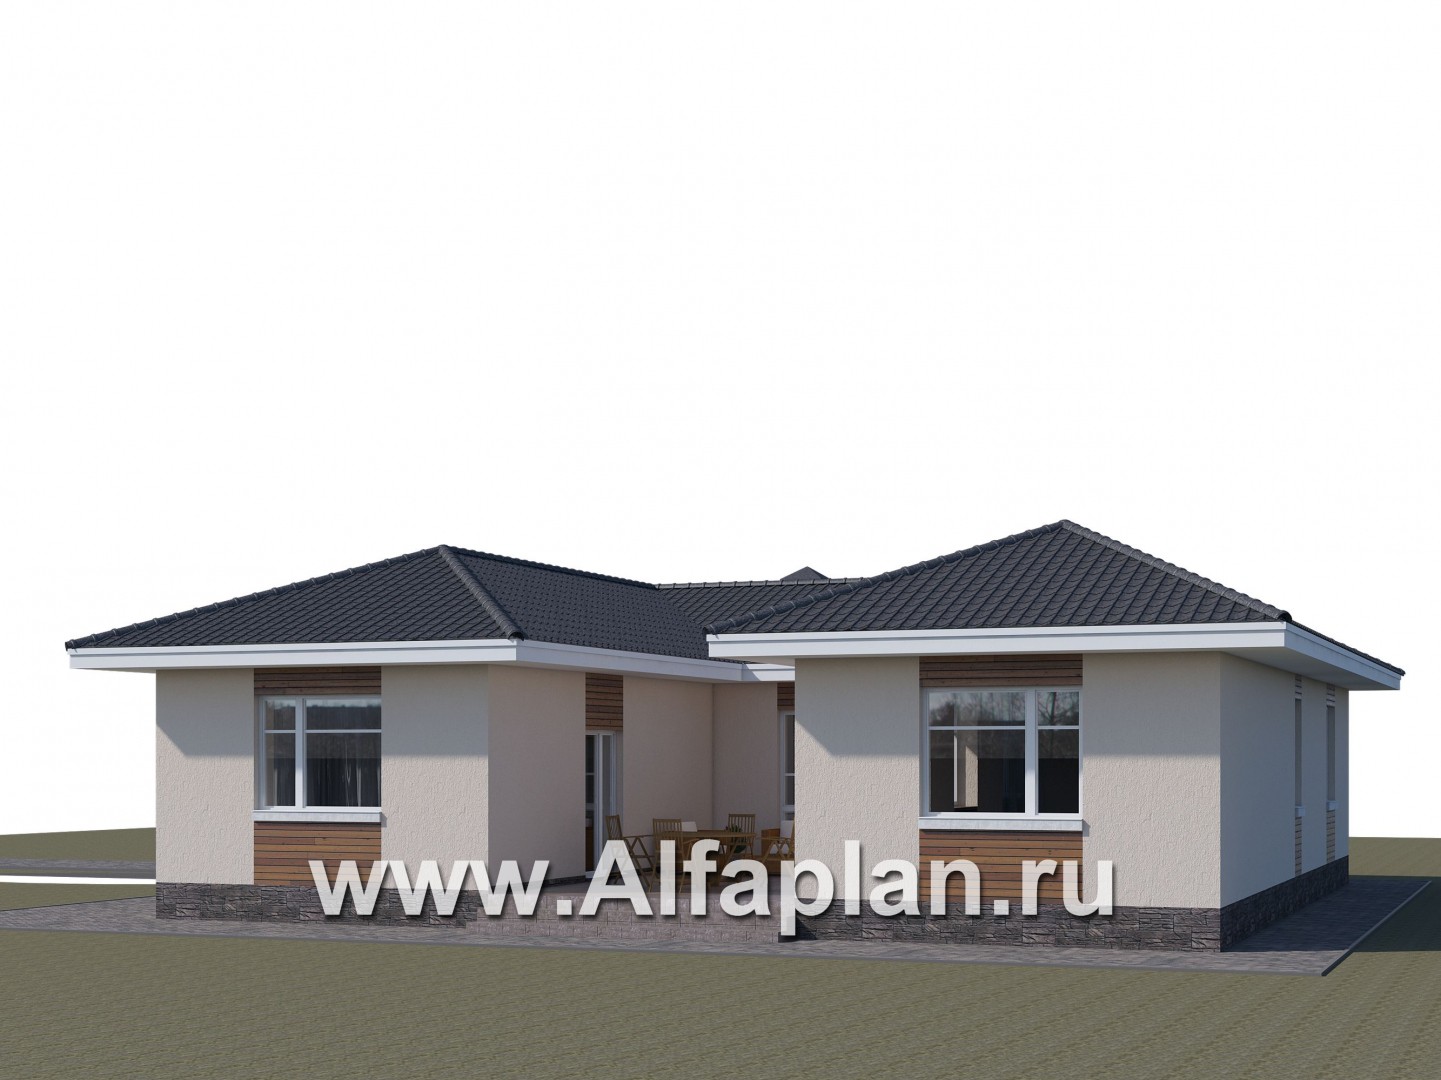 Проекты домов Альфаплан - "Атриум" - одноэтажный коттедж с внутренним двориком - дополнительное изображение №1